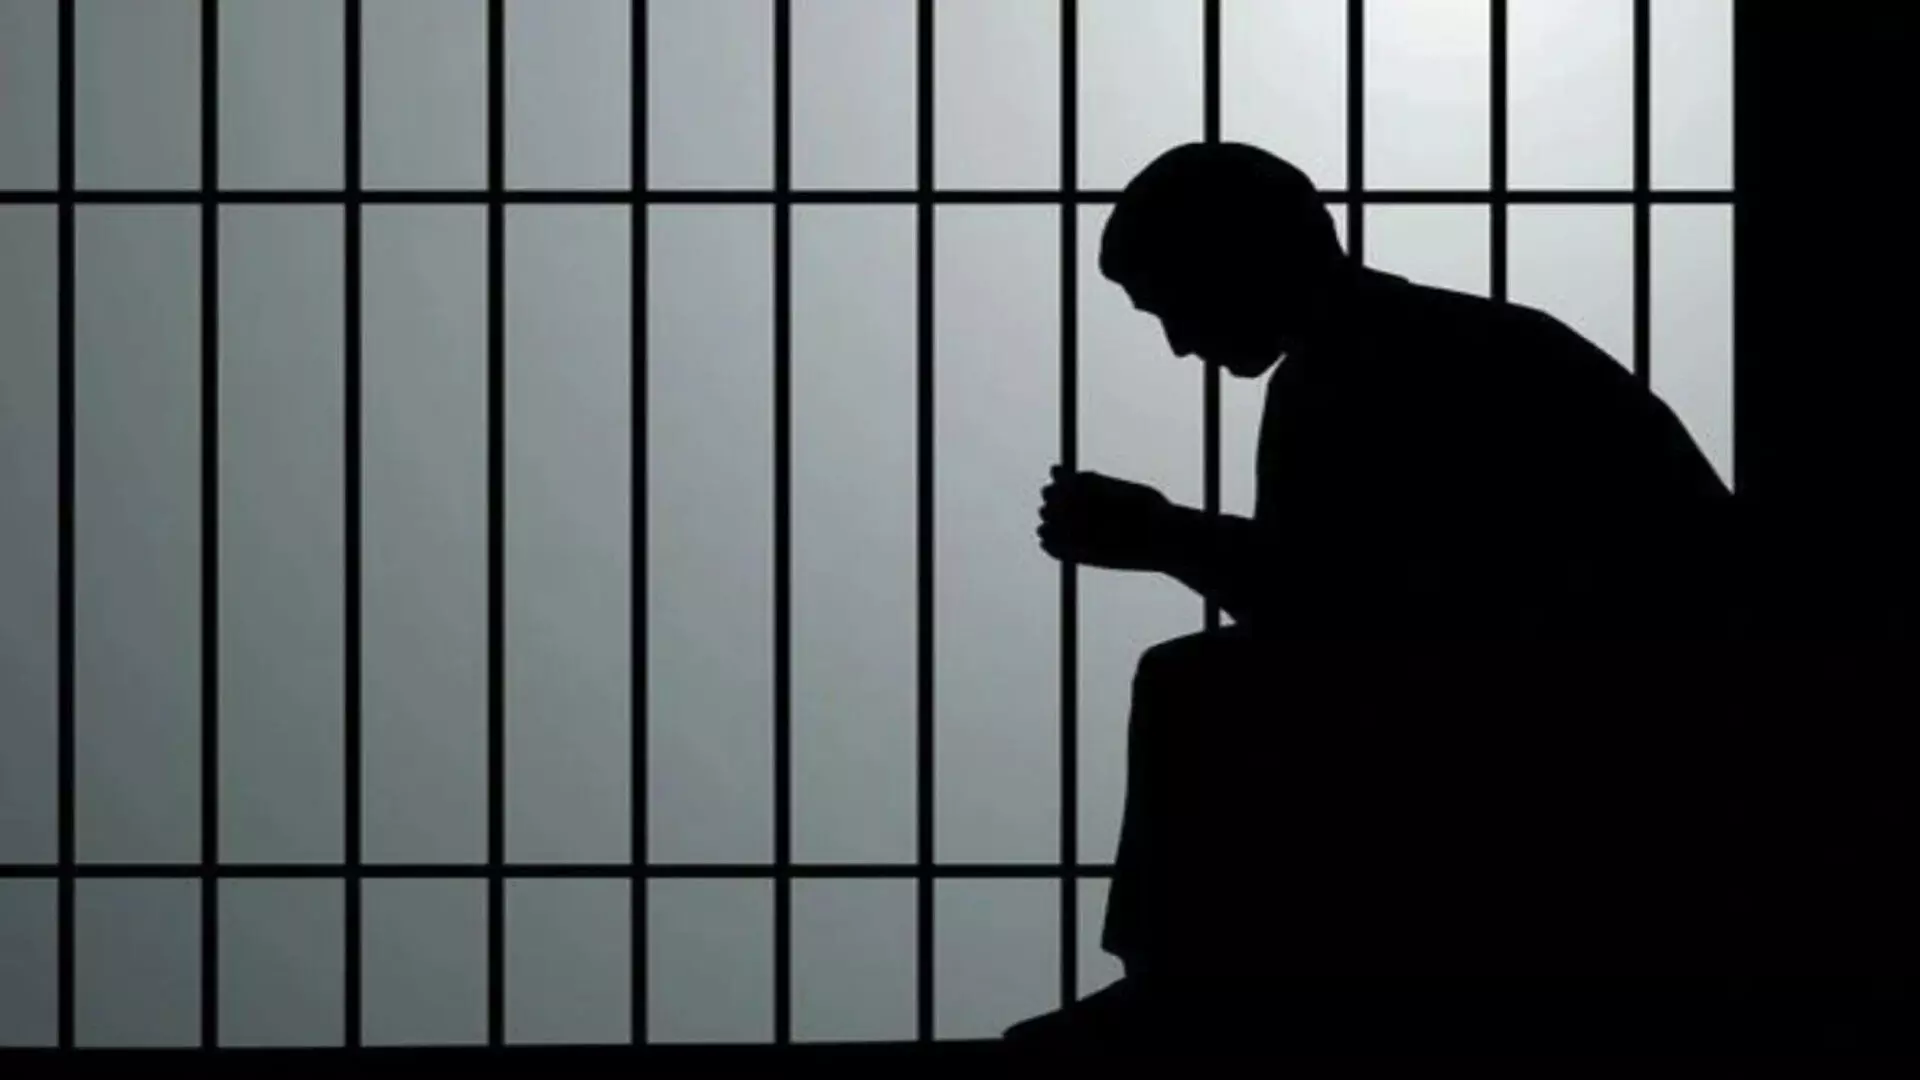 केरल के व्यक्ति को सऊदी जेल से बाहर निकालने के लिए ₹34 करोड़ की ब्लड मनी जुटाई गई